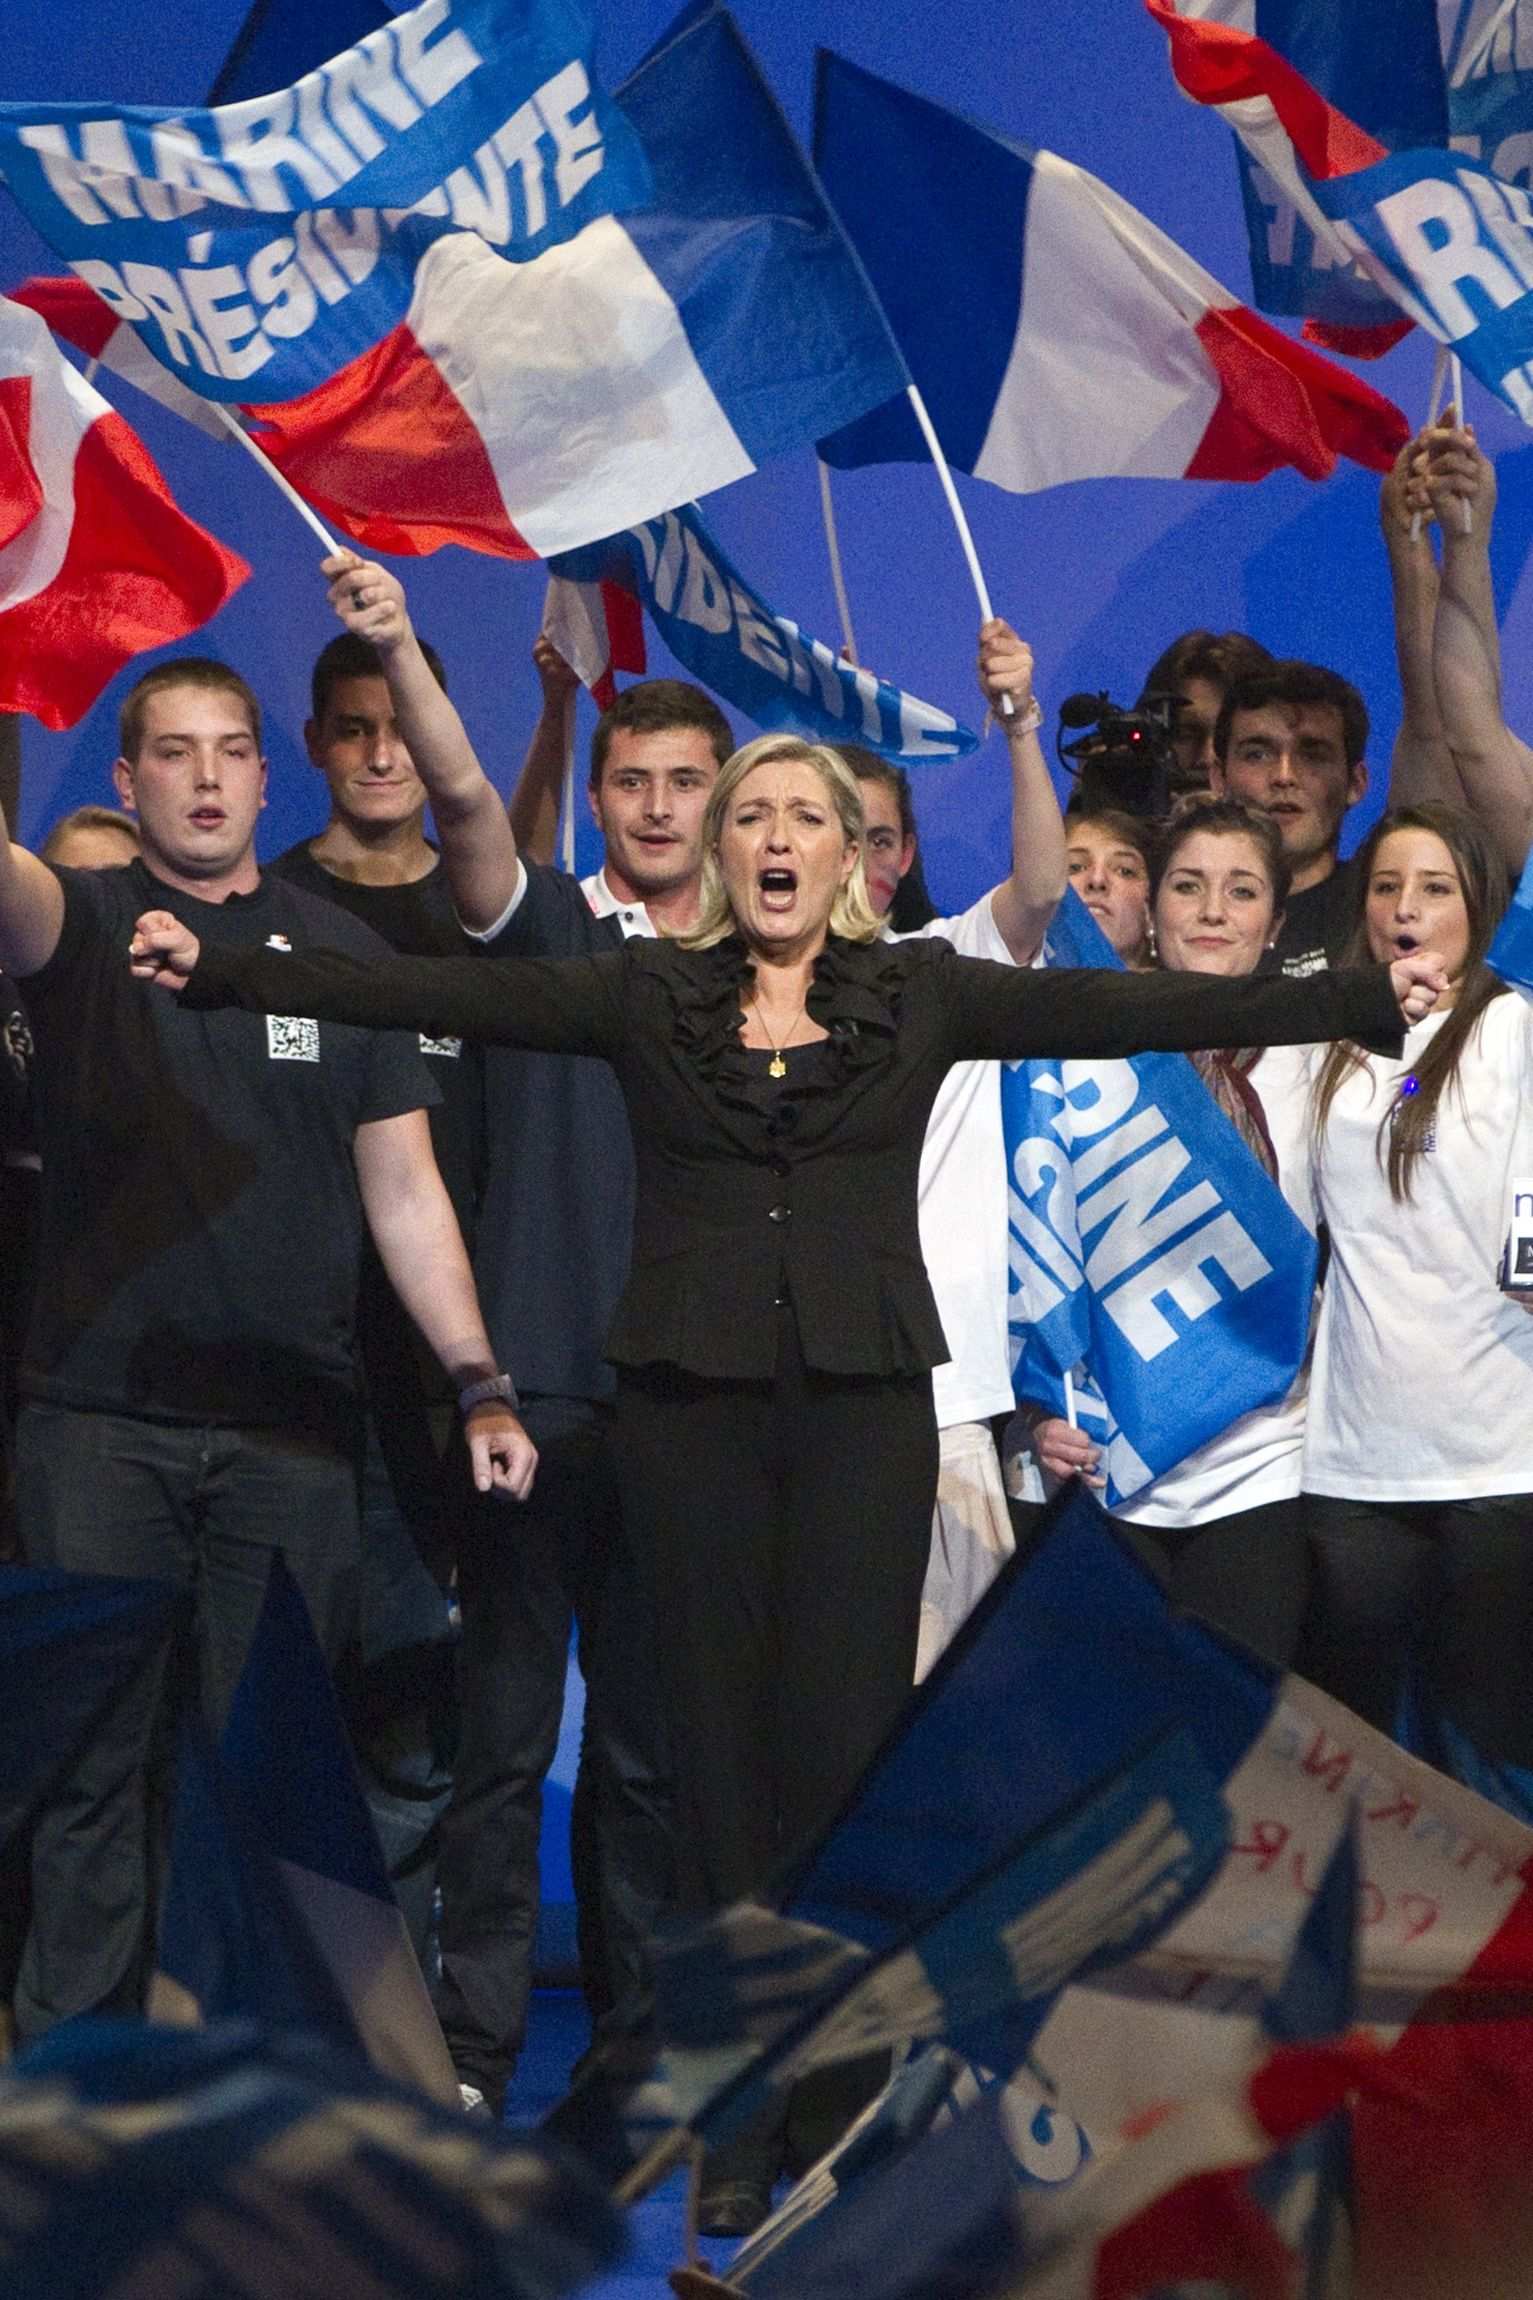 Le Pen vol eliminar l'educació gratuïta per als estrangers irregulars